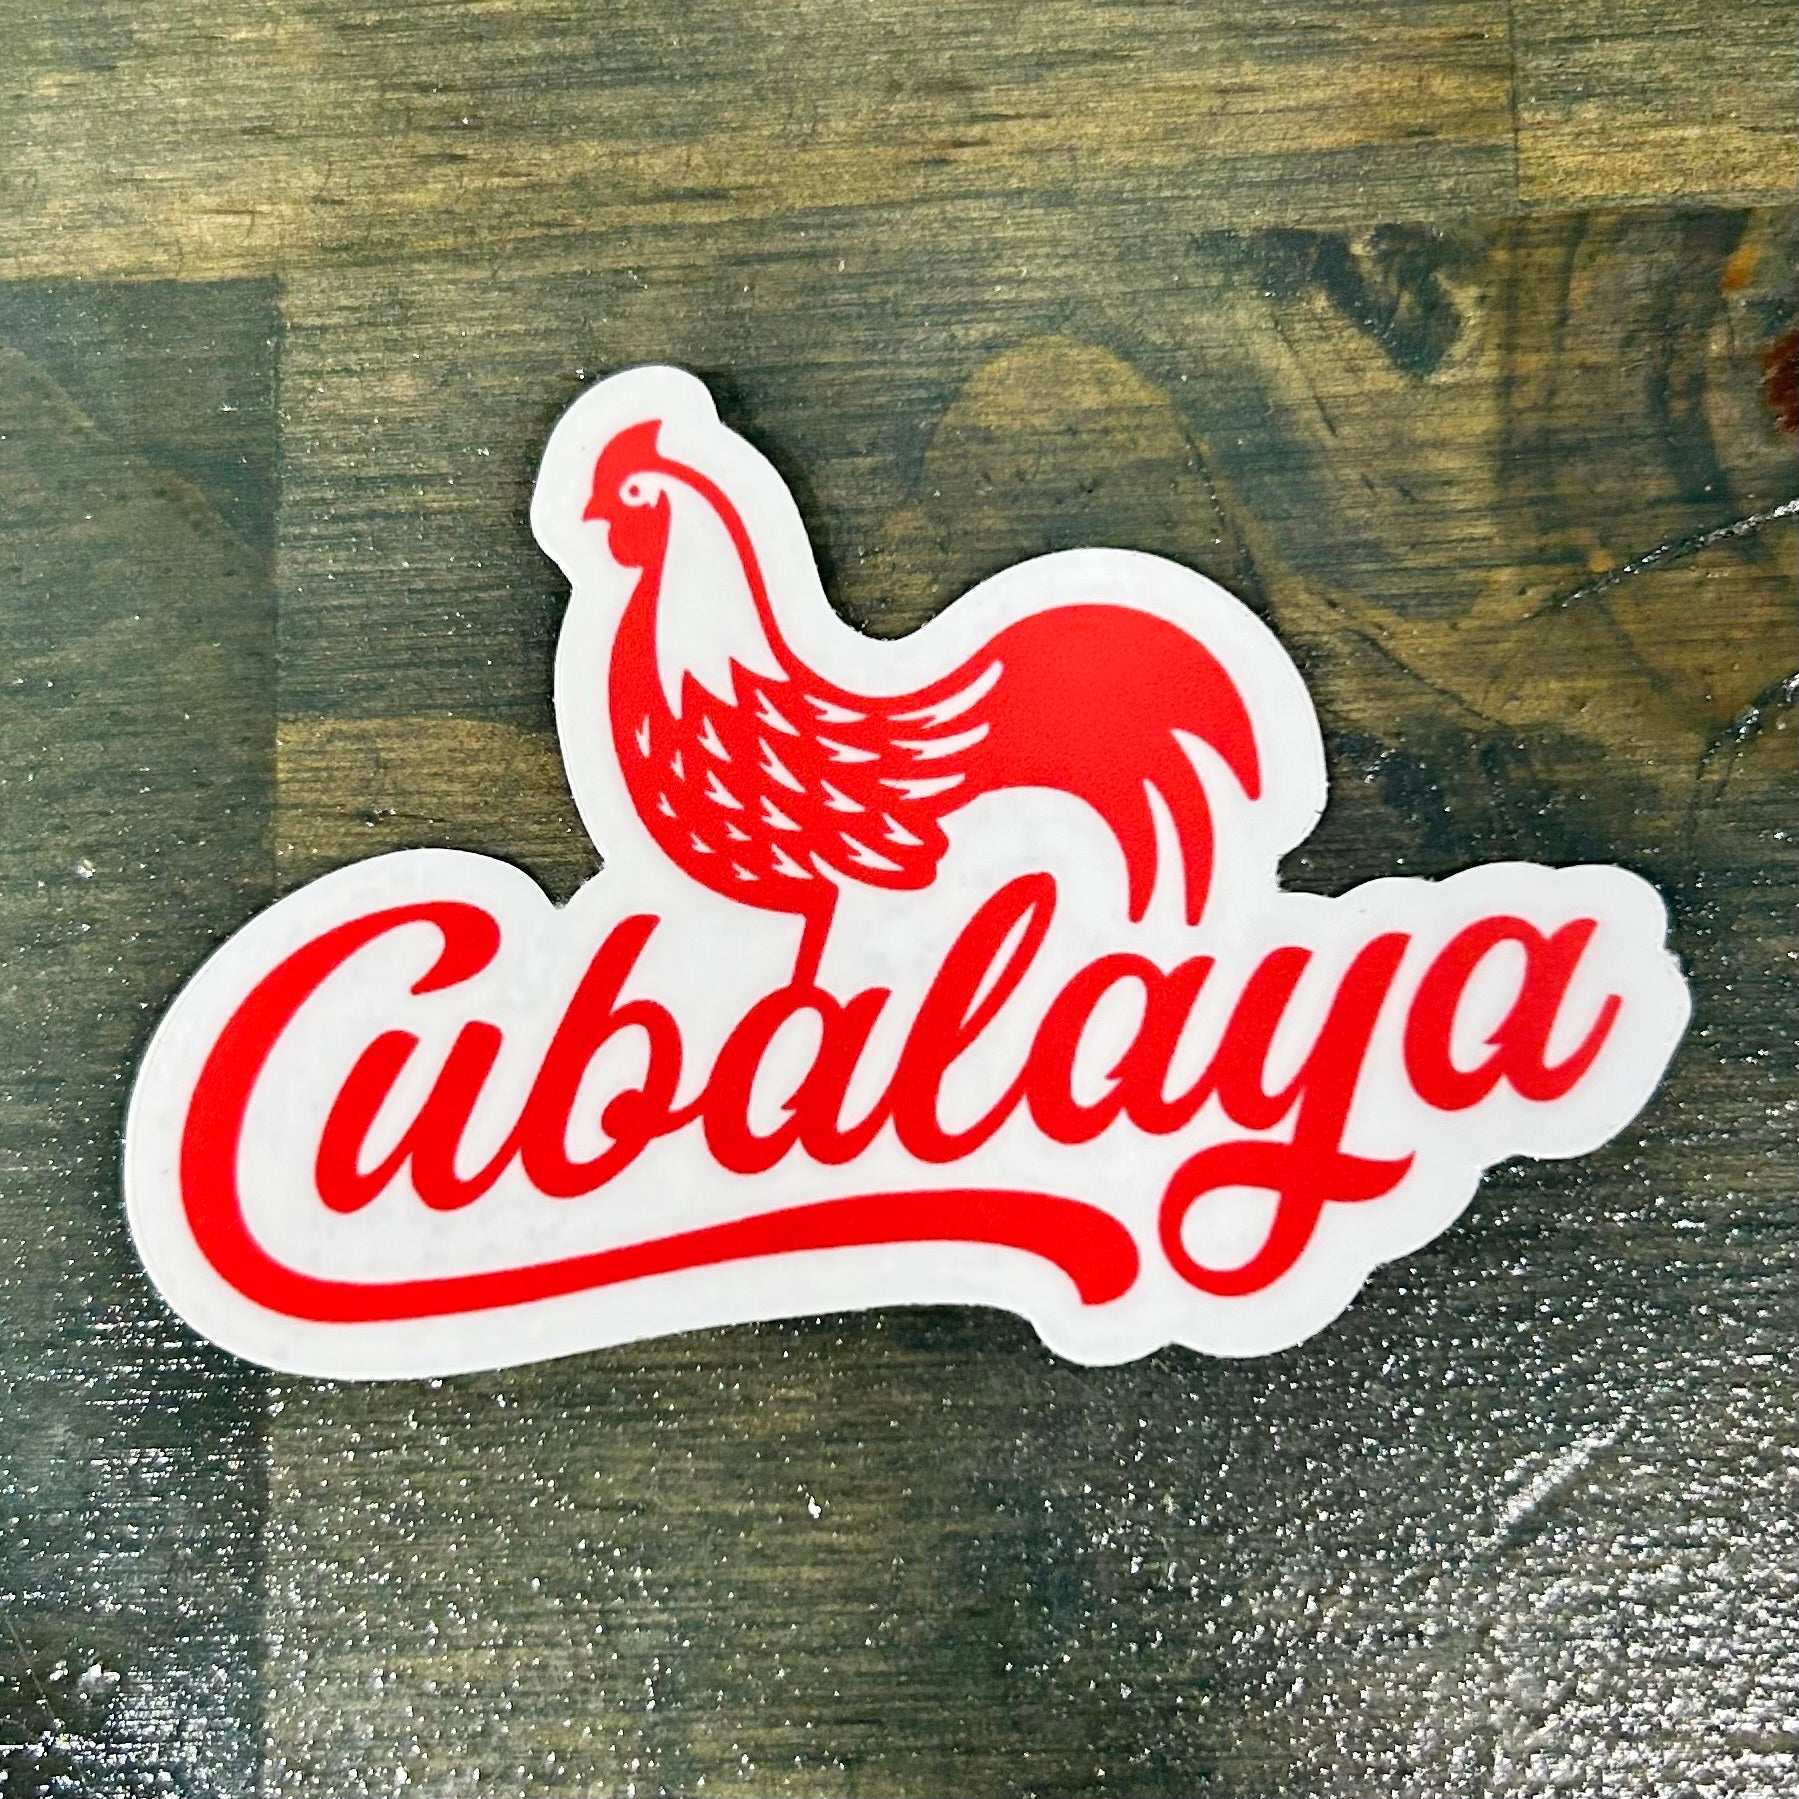 Cubalaya outfitters sticker